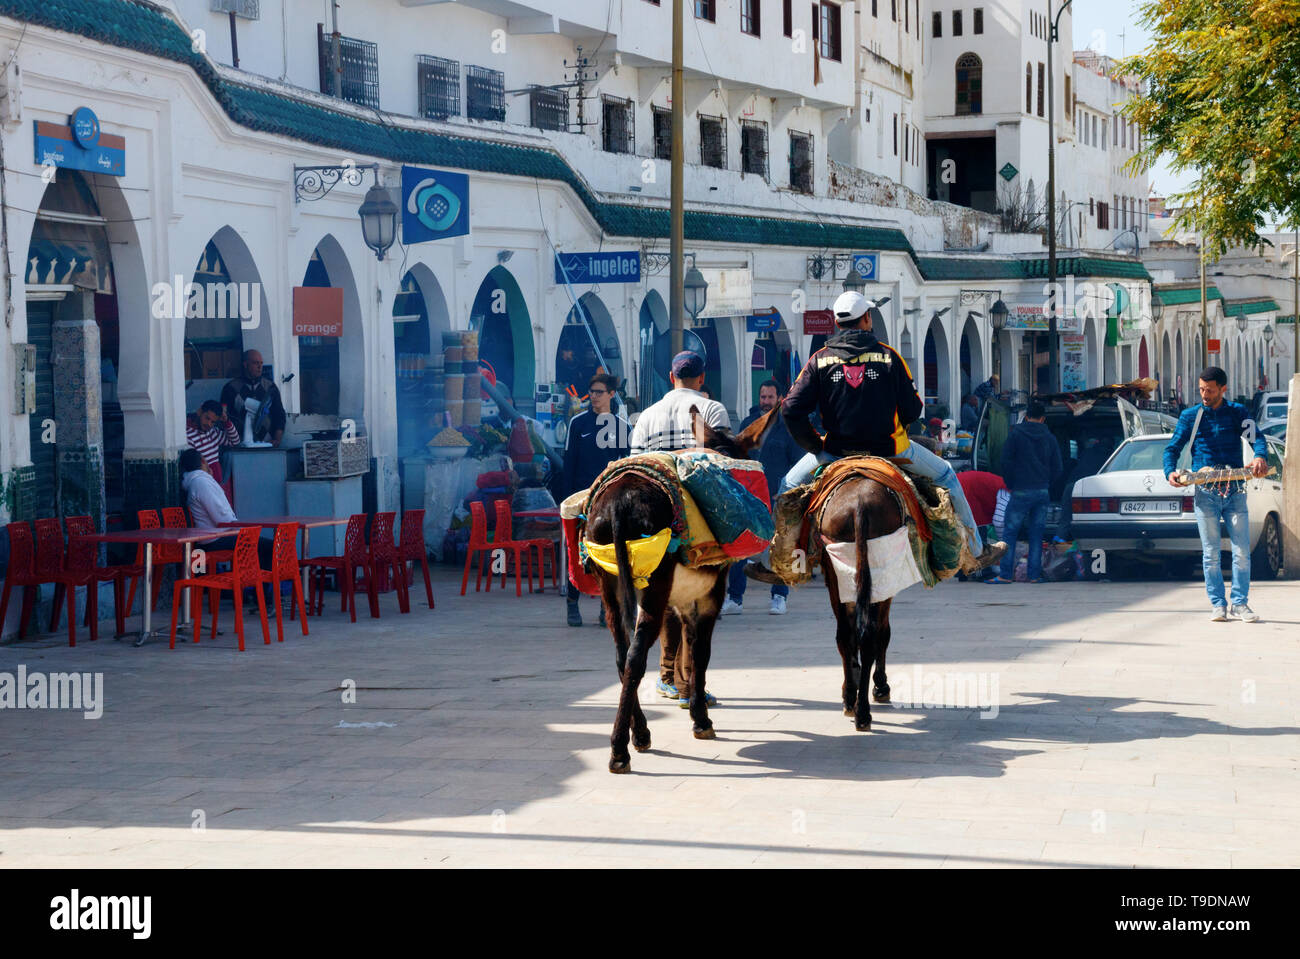 La piazza principale di Moulay Idriss con negozi, bar e due uomini con gli asini camminando lungo il arcade in una giornata di sole. Moulay Idriss Zerhoun, Marocco Foto Stock